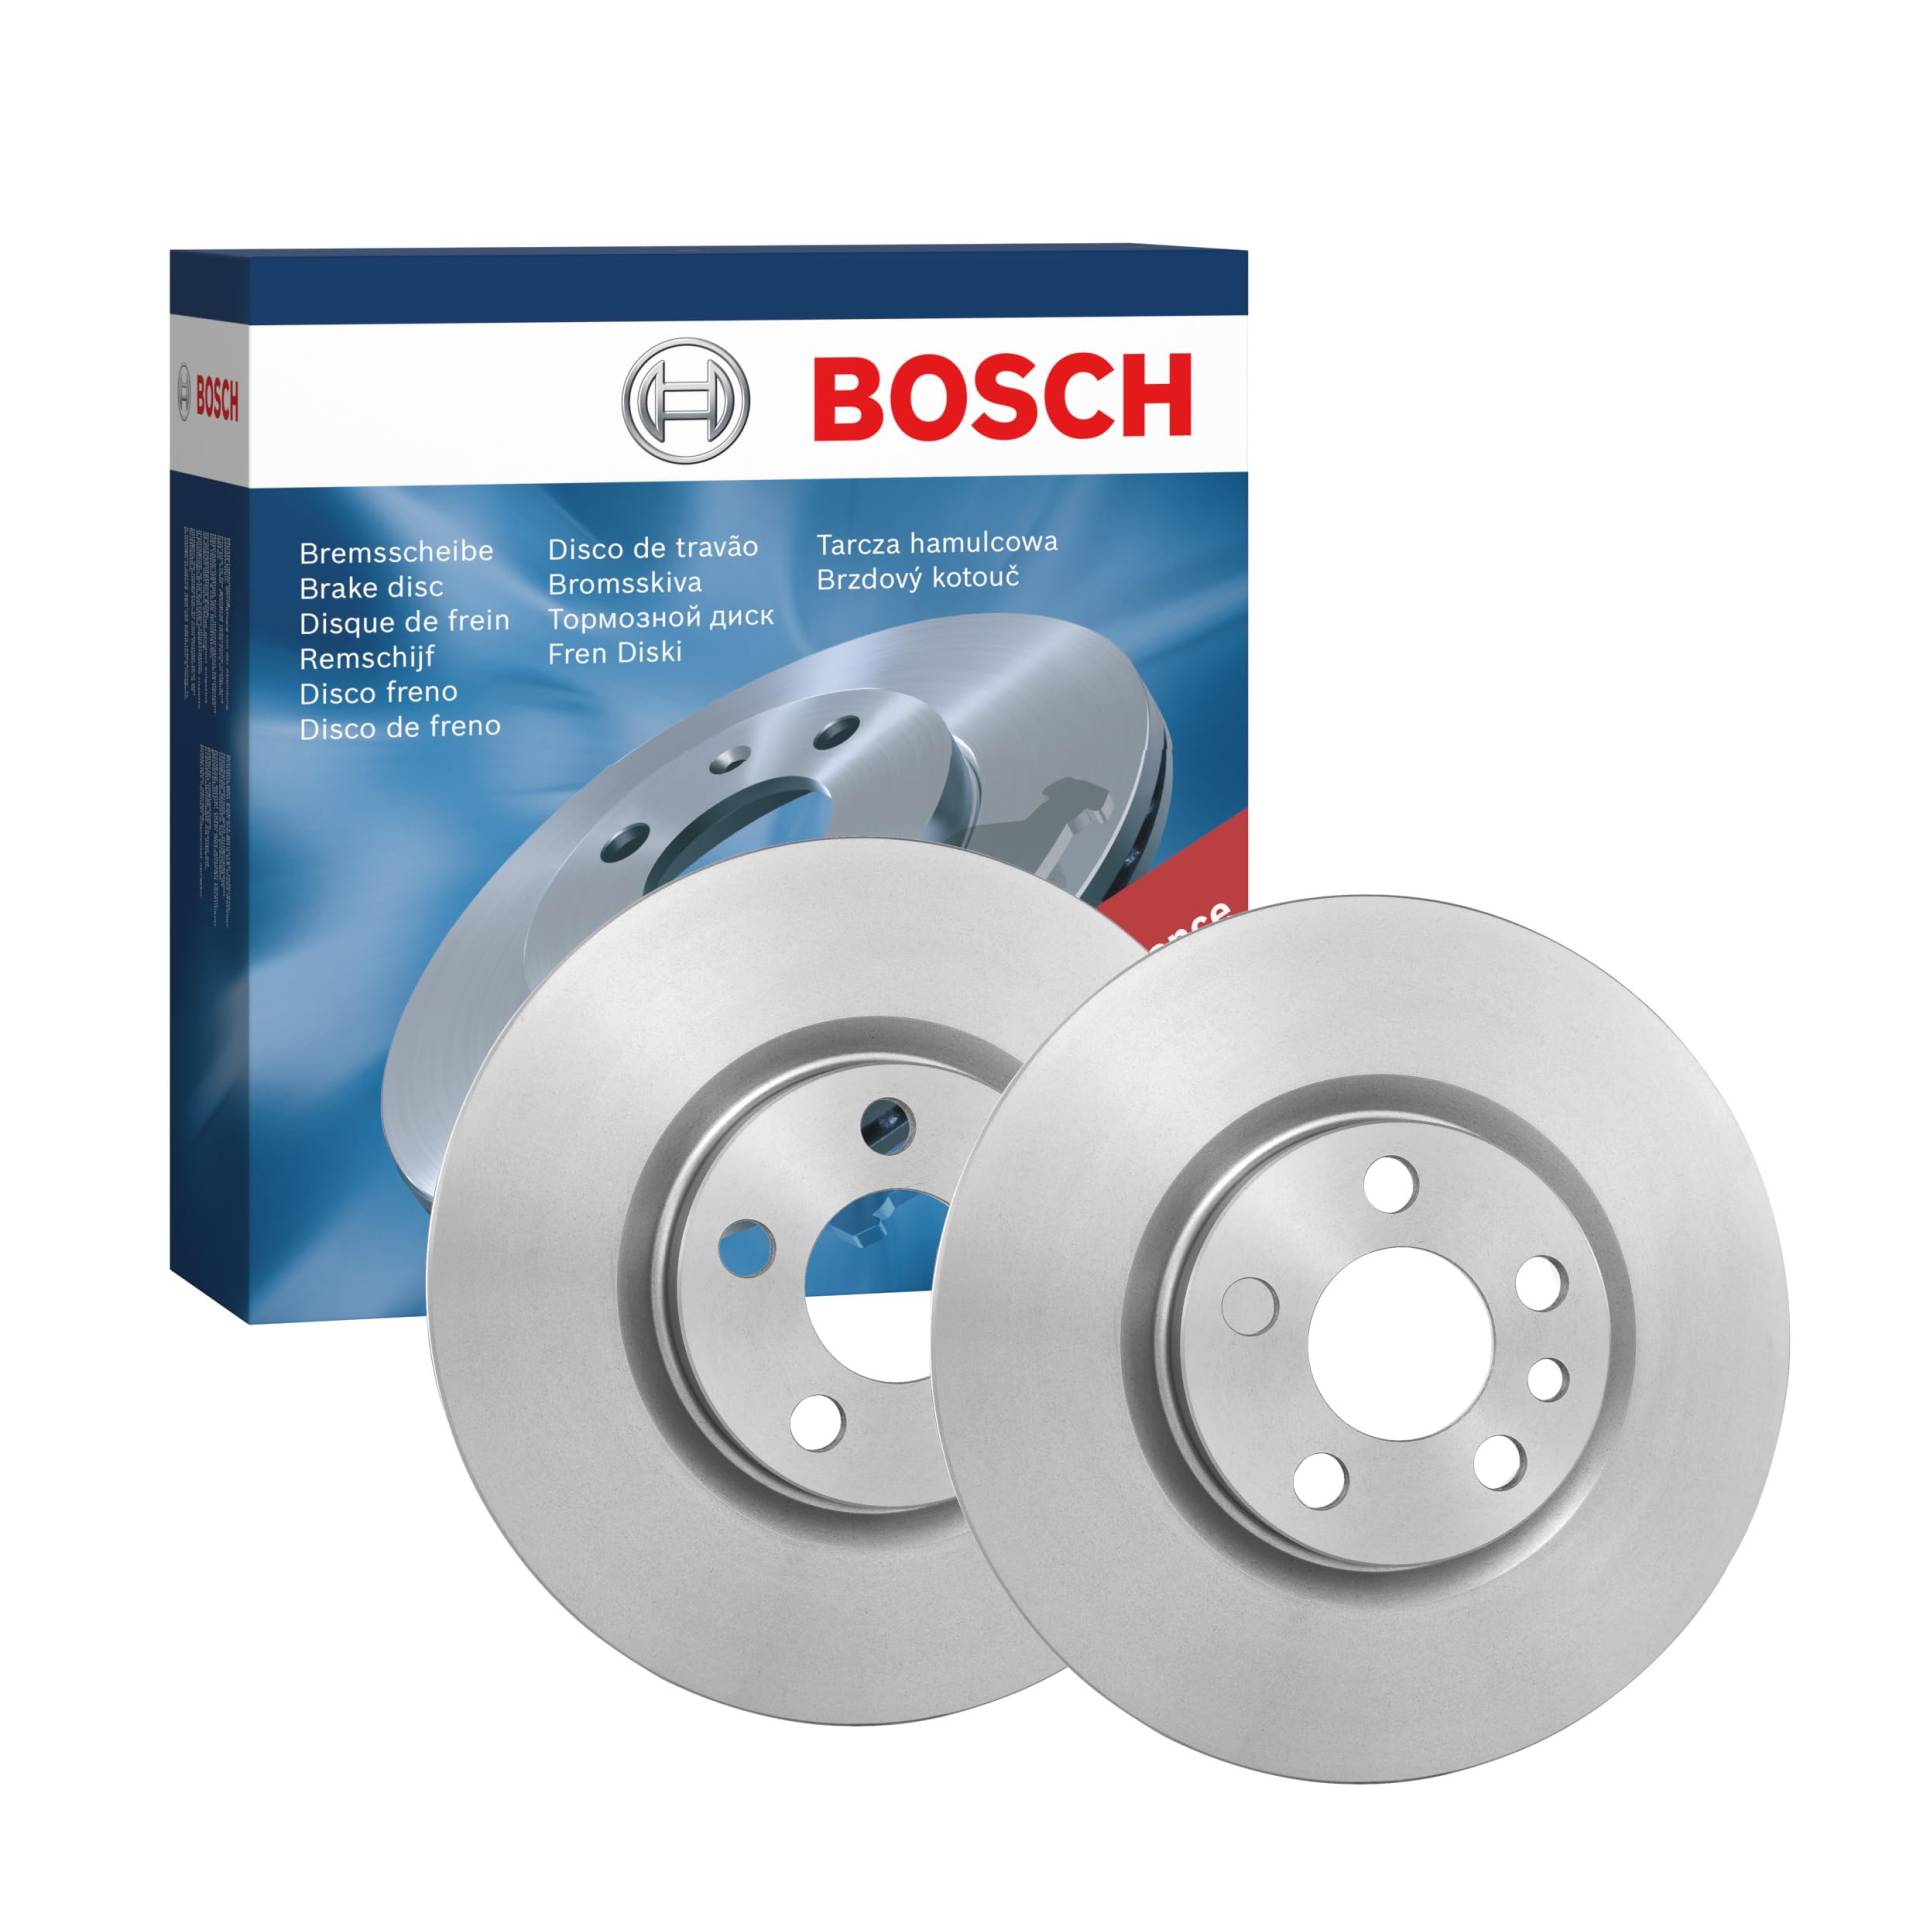 Bosch BD715 Bremsscheiben - Vorderachse - ECE-R90 Zertifizierung - zwei Bremsscheiben pro Set von Bosch Automotive